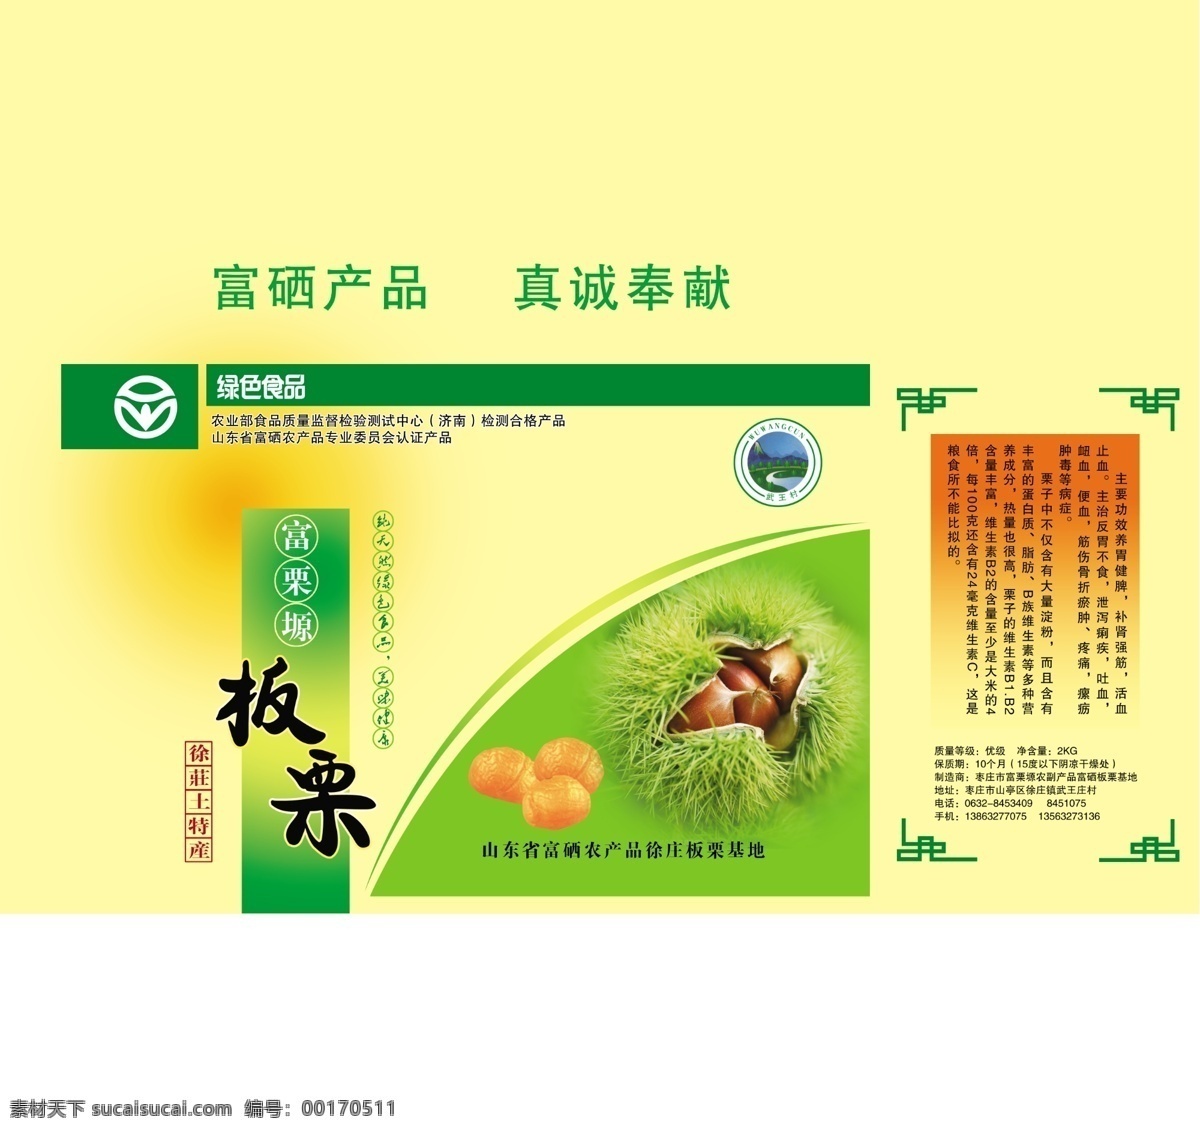 板栗包装 板栗 包装 绿色 环保 包装设计 广告设计模板 源文件